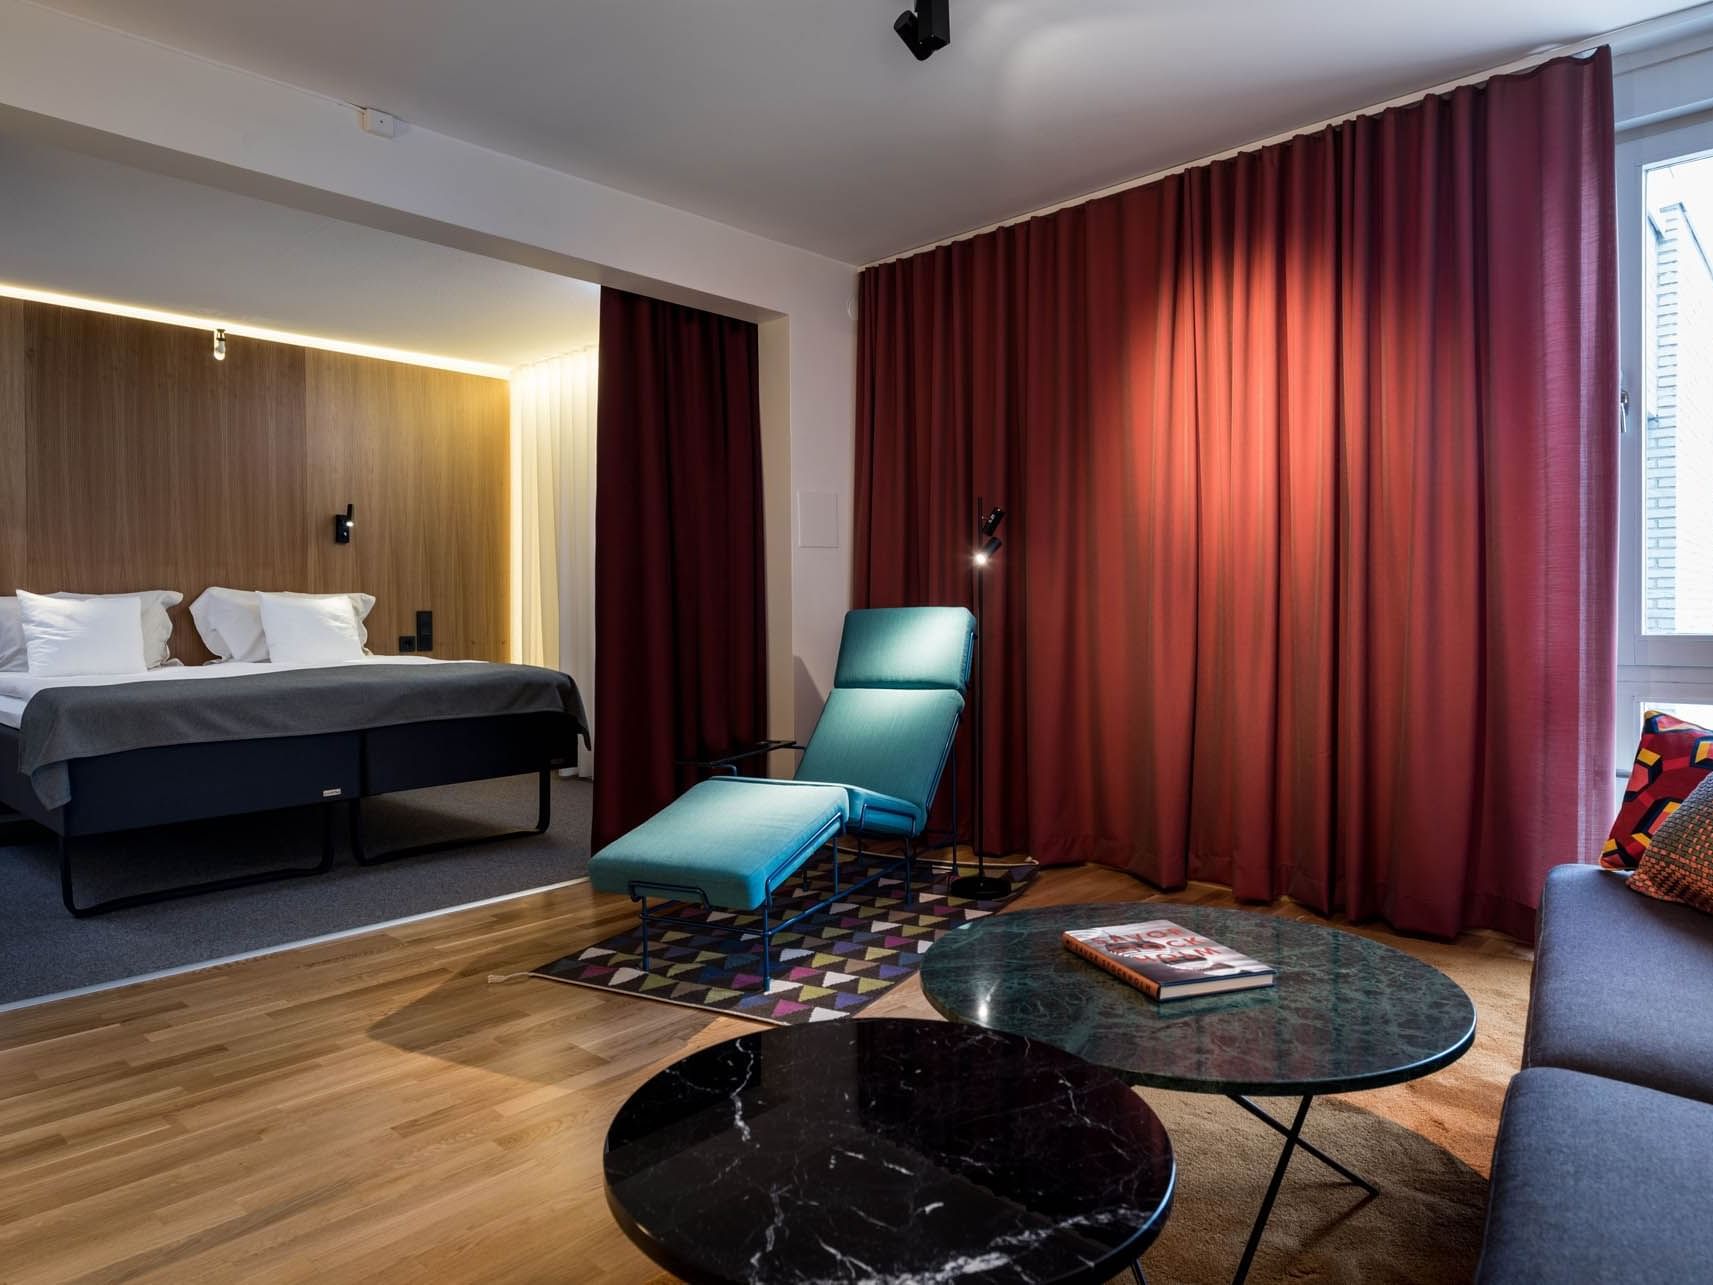 Suite at Hotel Birger Jarl in Stockholm, Sweden